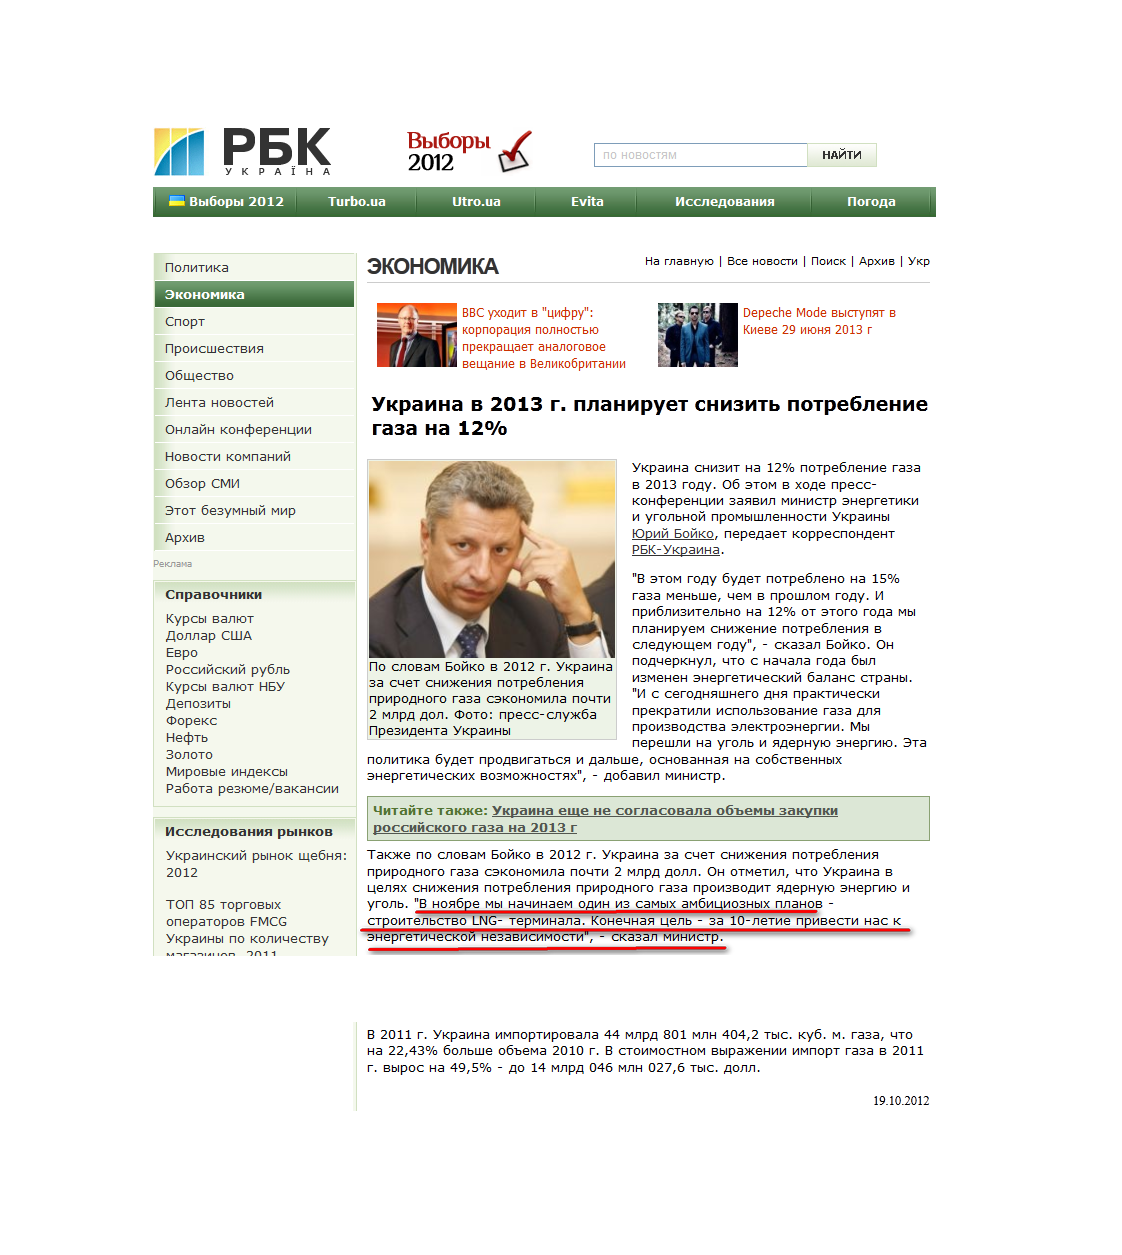 http://www.rbc.ua/rus/top/show/ukraina-v-2013-g-planiruet-snizit-potreblenie-gaza-na-12--19102012114900